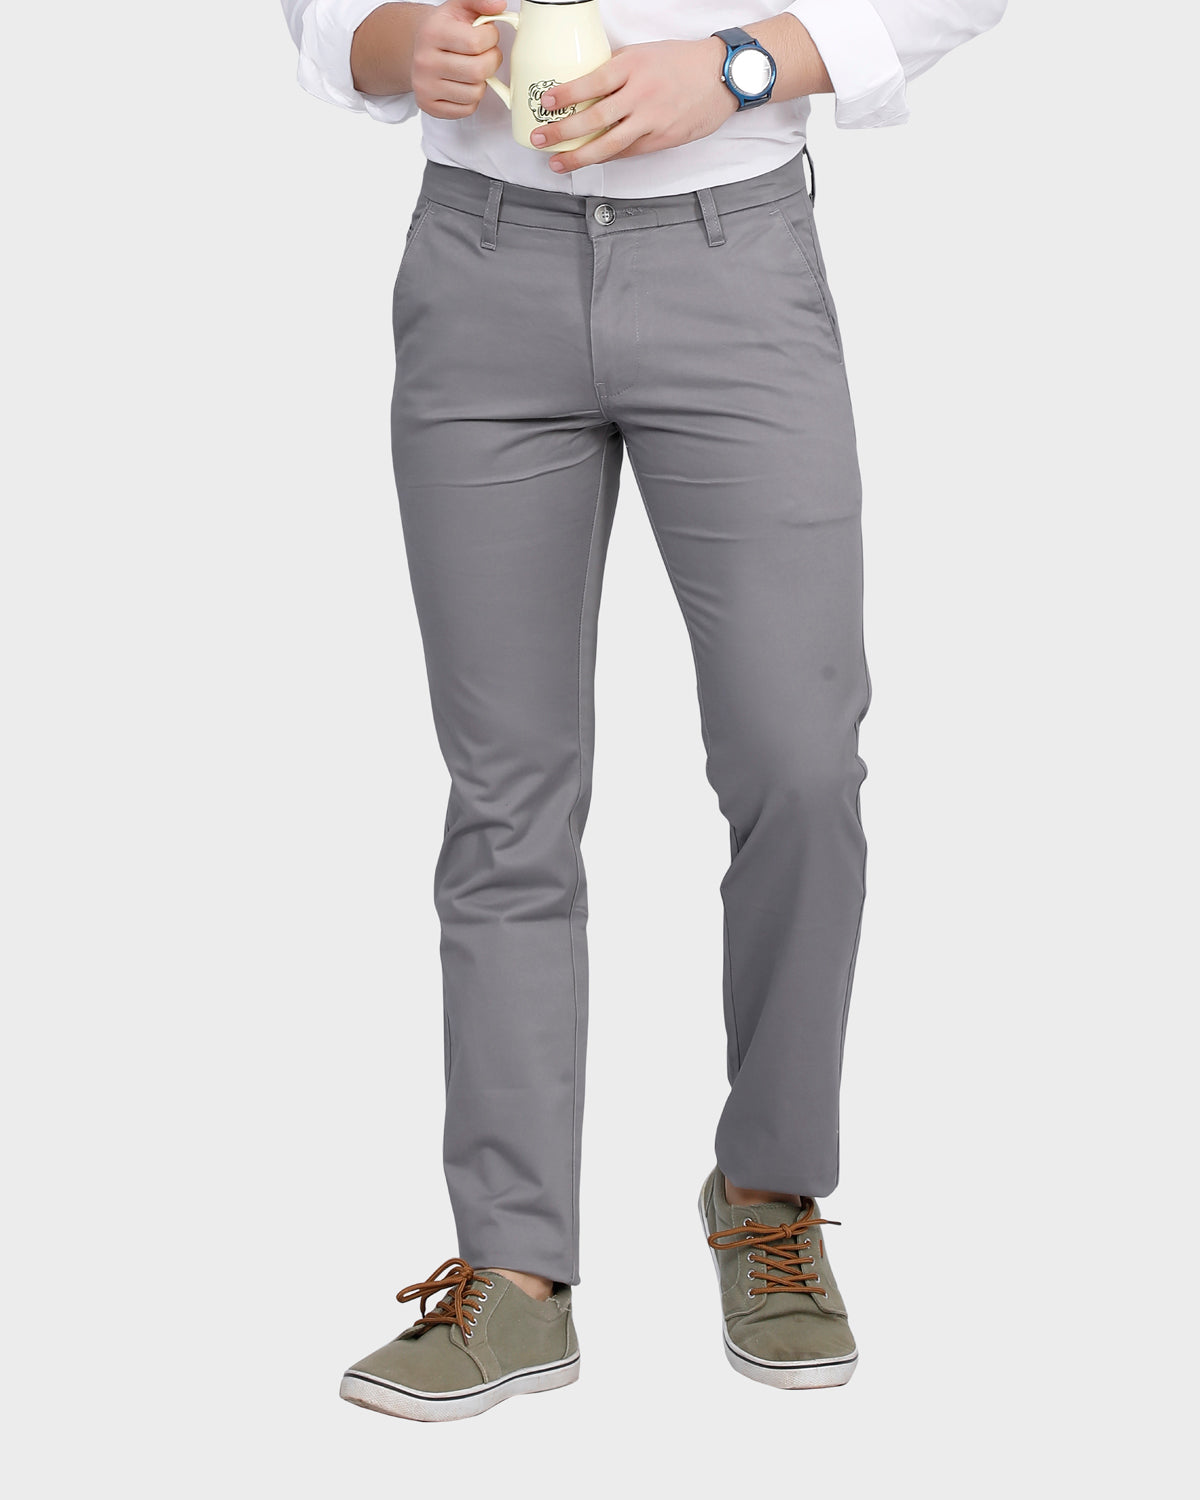 Men's  Slim Fit Pant- Lt. Grey1